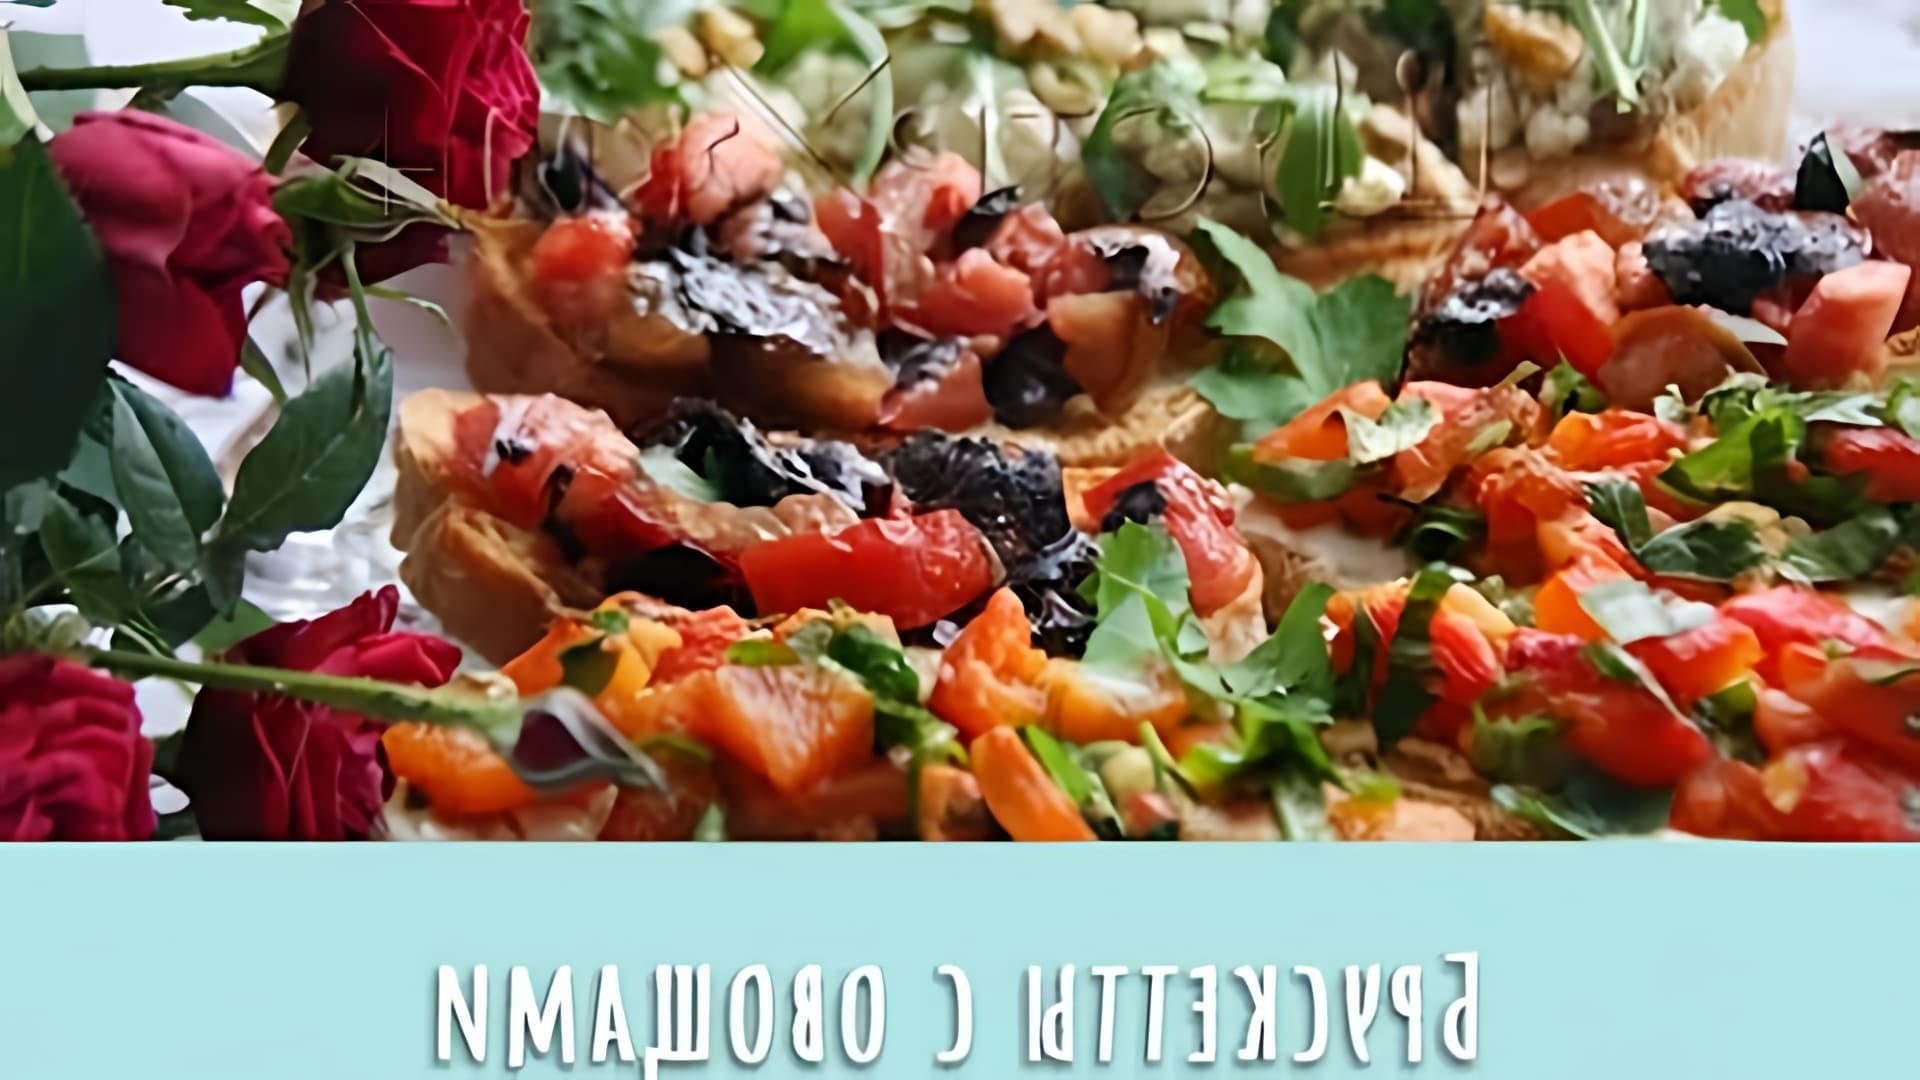 В этом видео-ролике мы увидим три разных варианта приготовления брускетты - с томатом и базиликом, с перцем и творожным сыром, а также с баклажаном